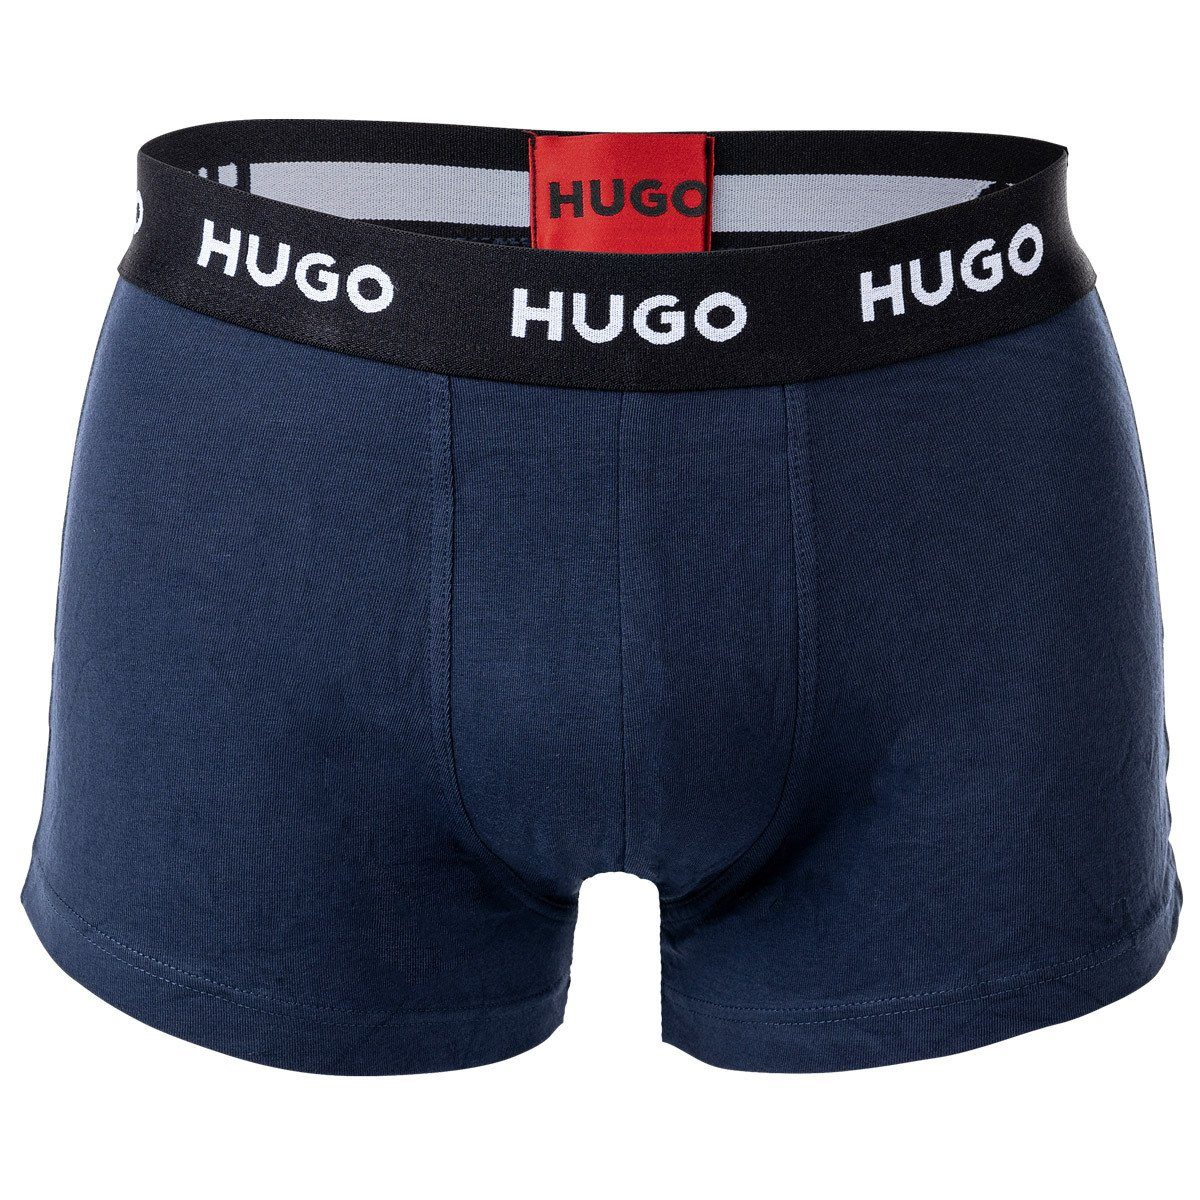 HUGO Boxer Herren Boxer - 3er Triplet Pack Blau Shorts, Trunks